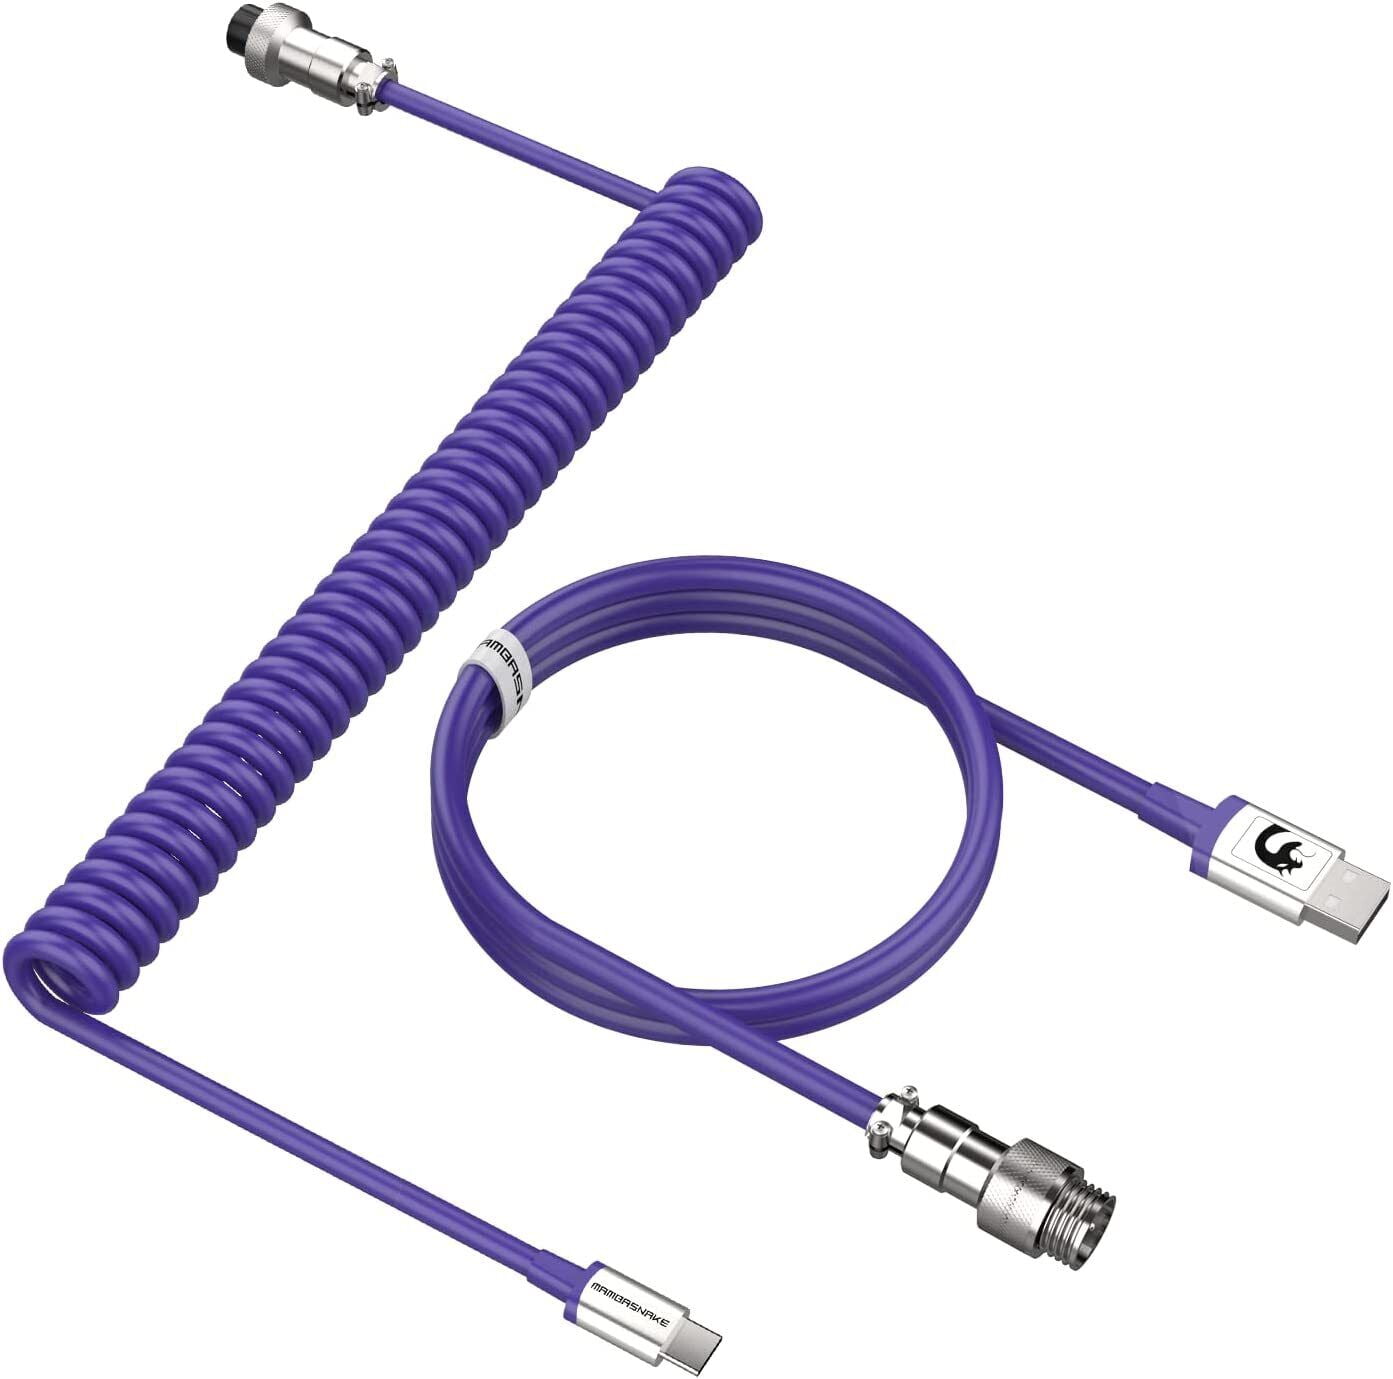 CABLE USB (Imprimante) - Your Materiel